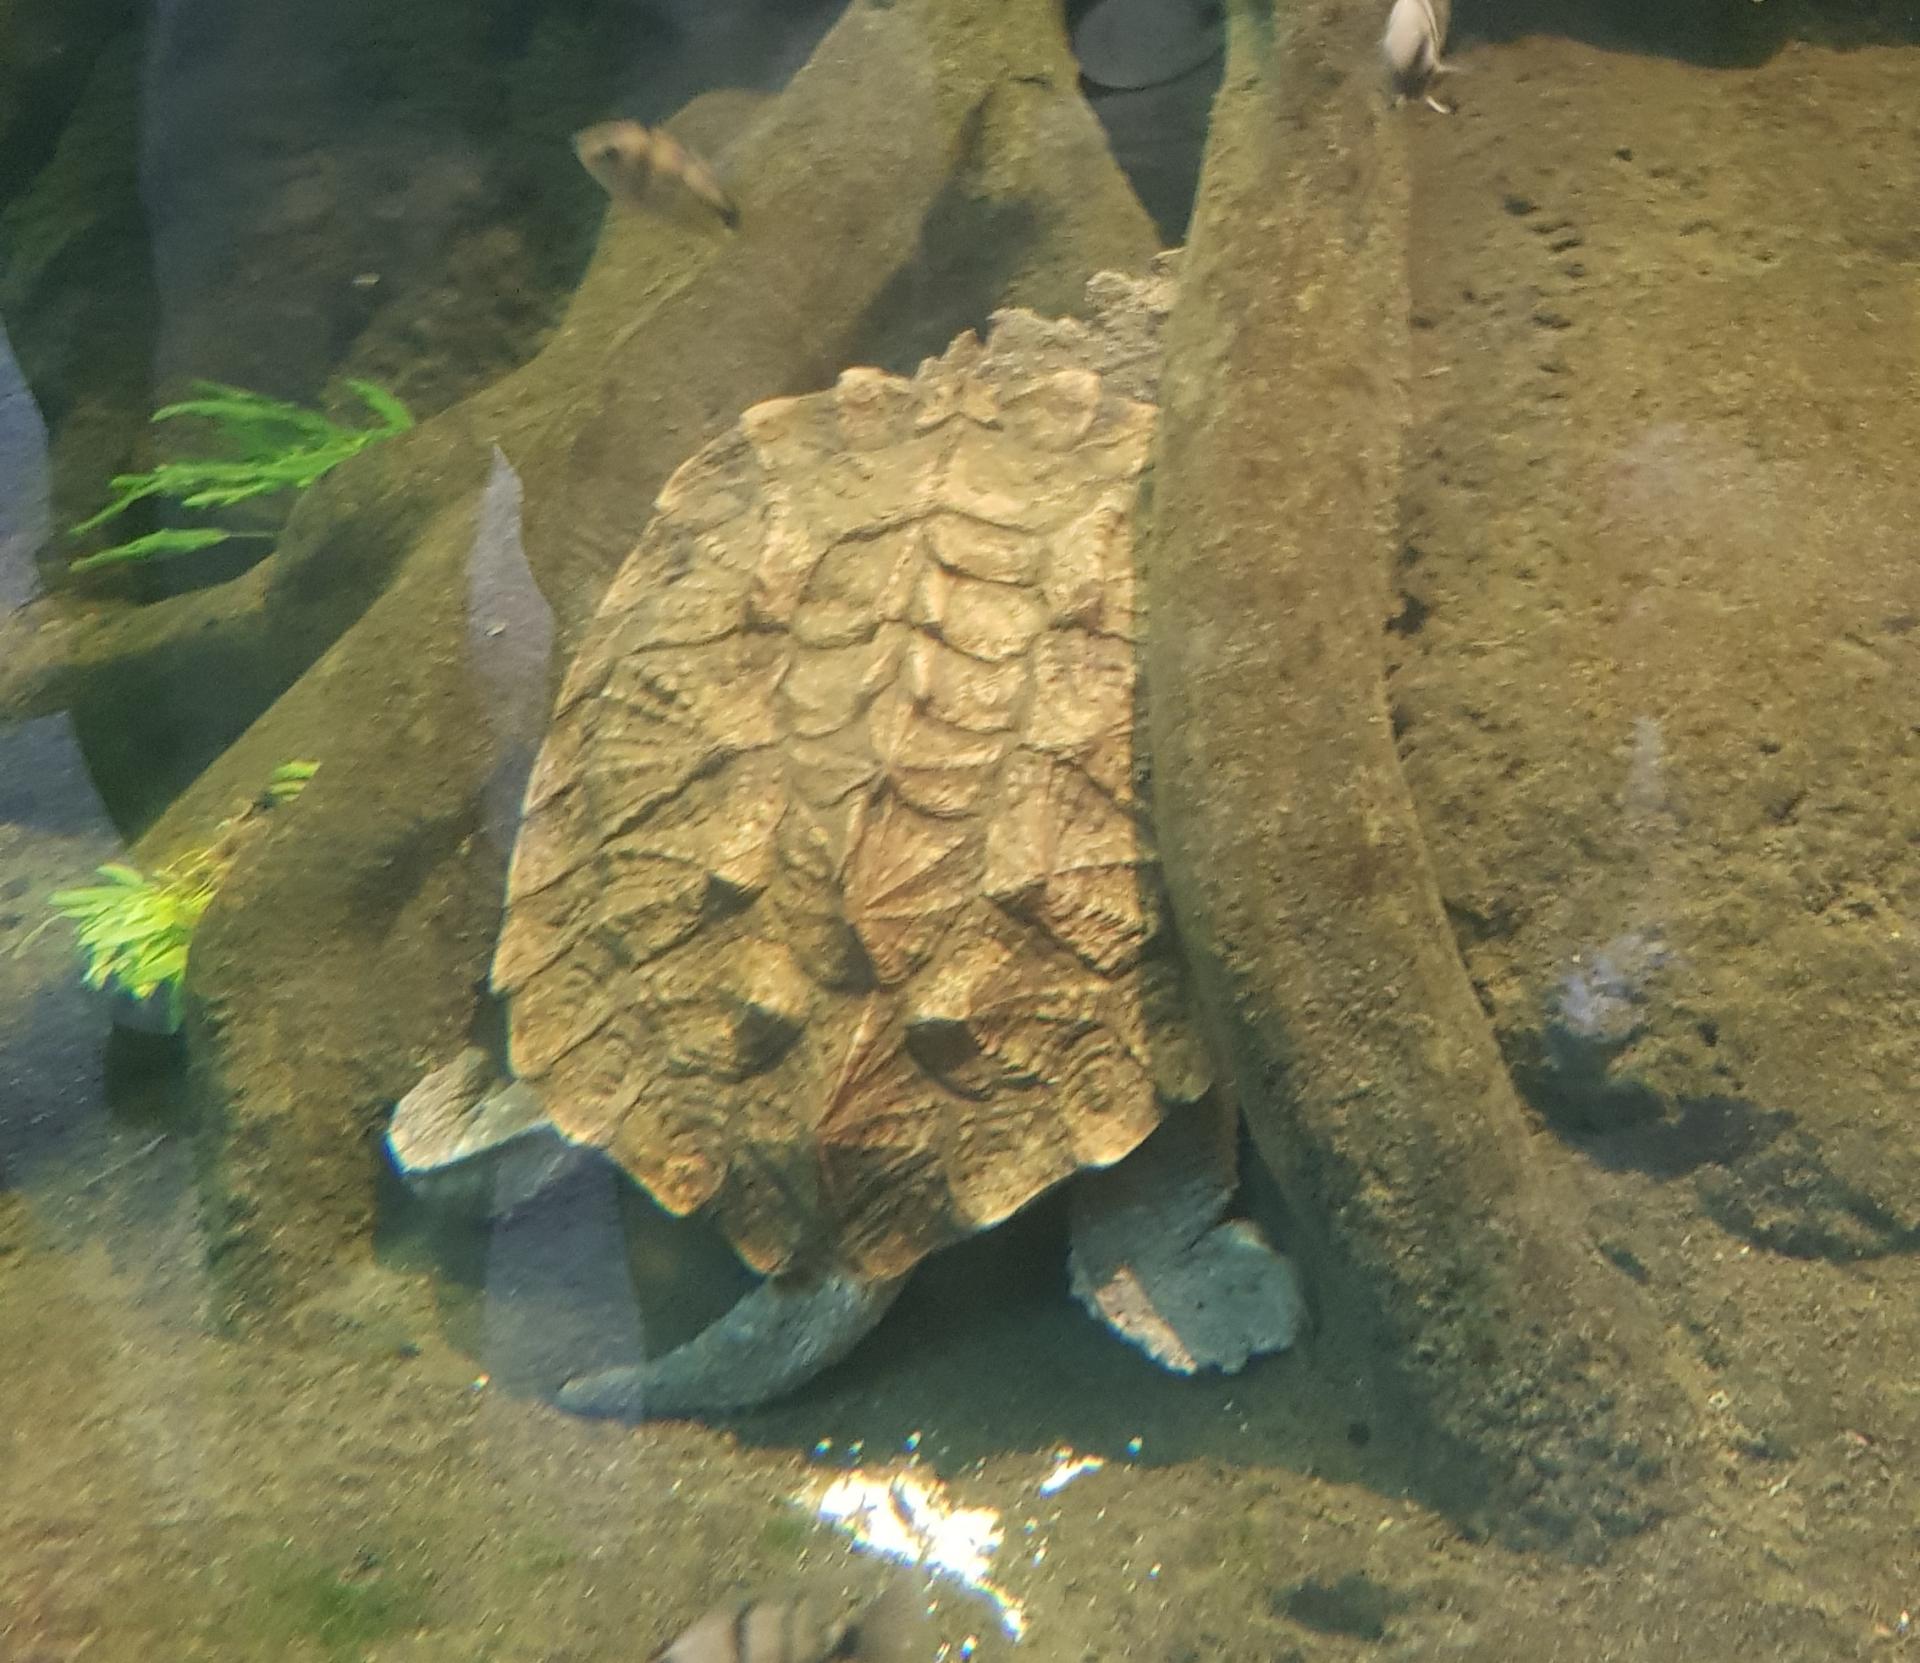 Comment s'appelle cette tortue ?